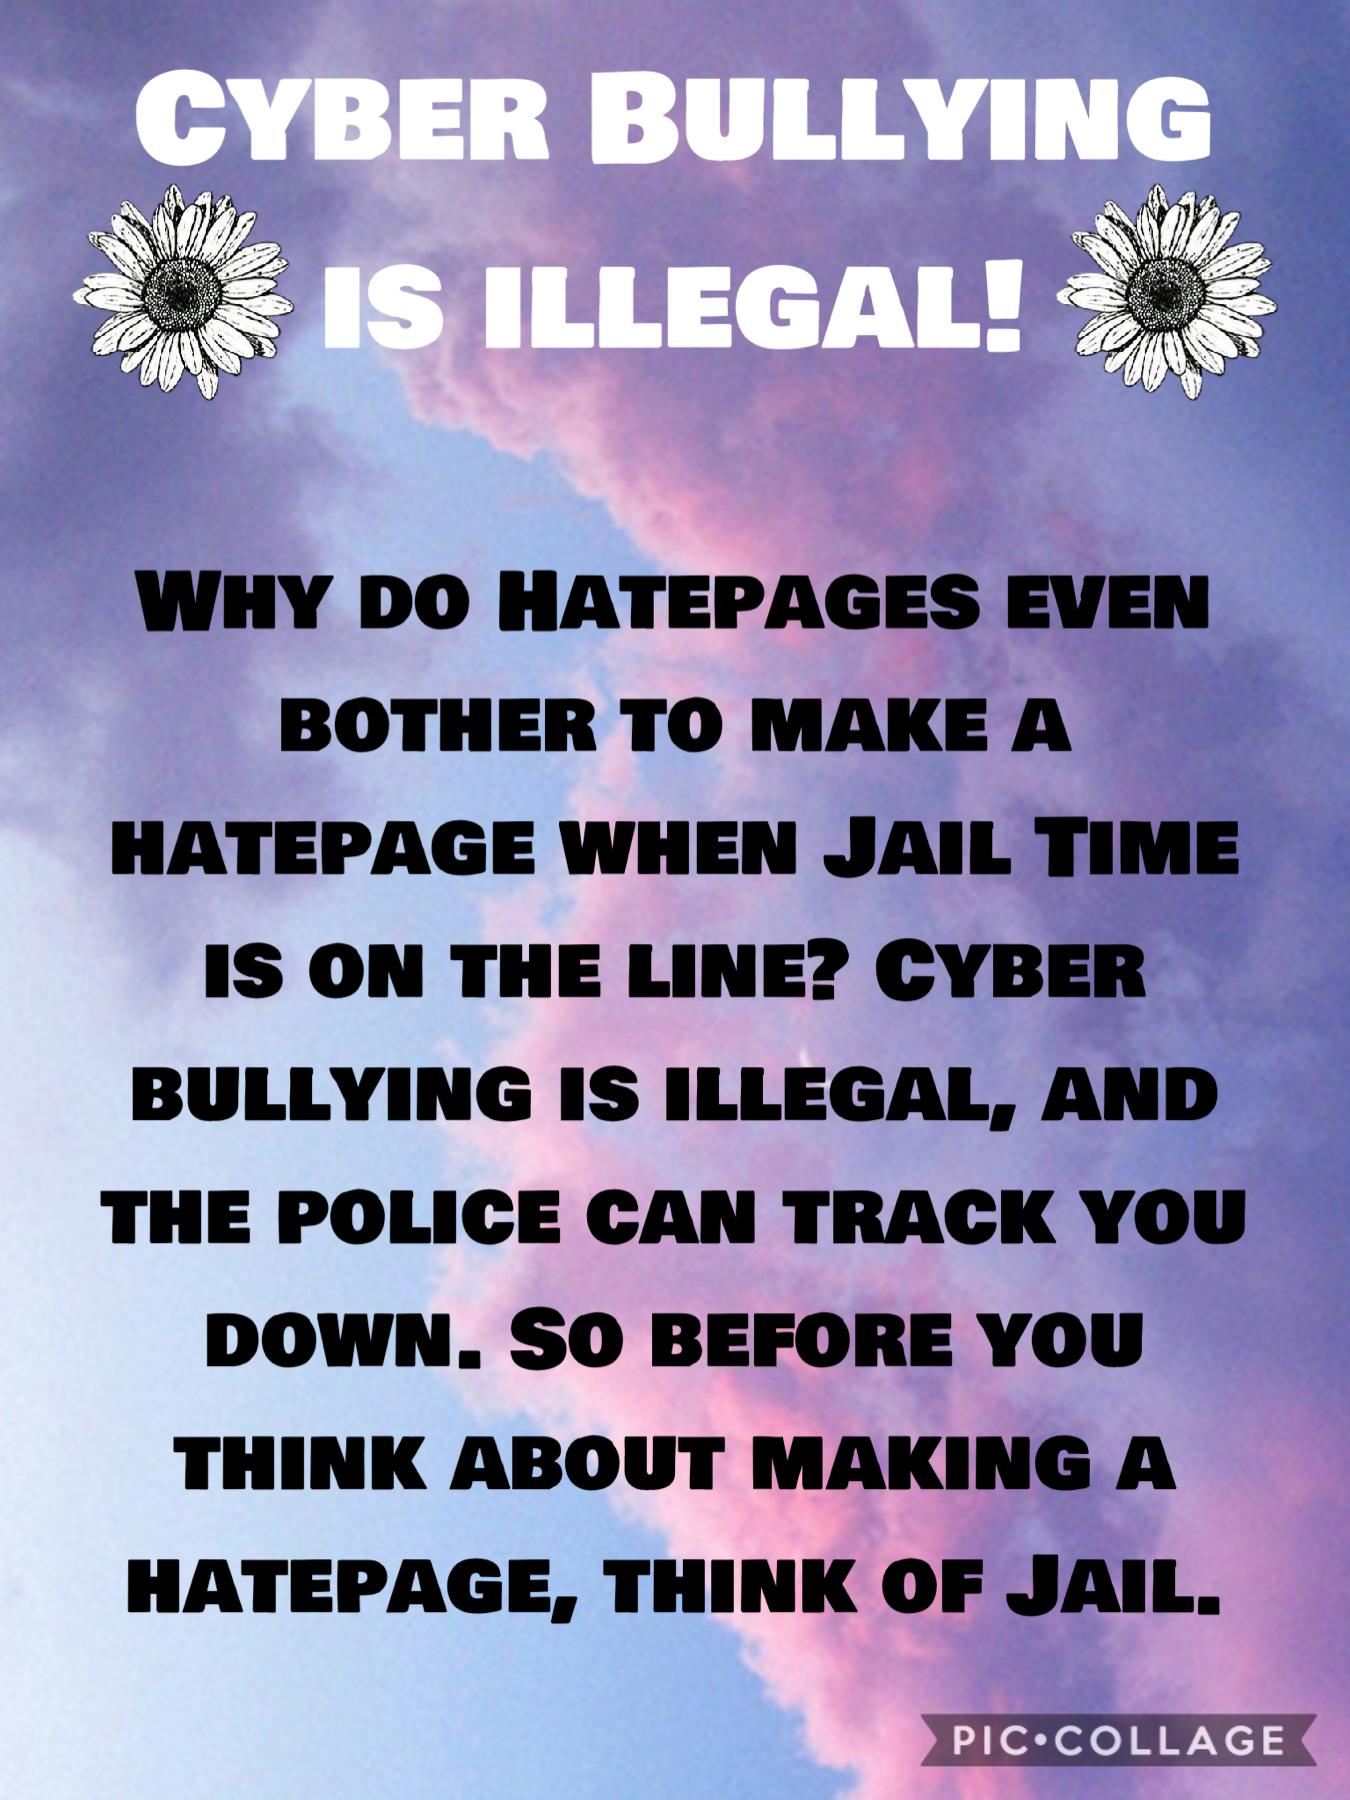 It’s Illegal!